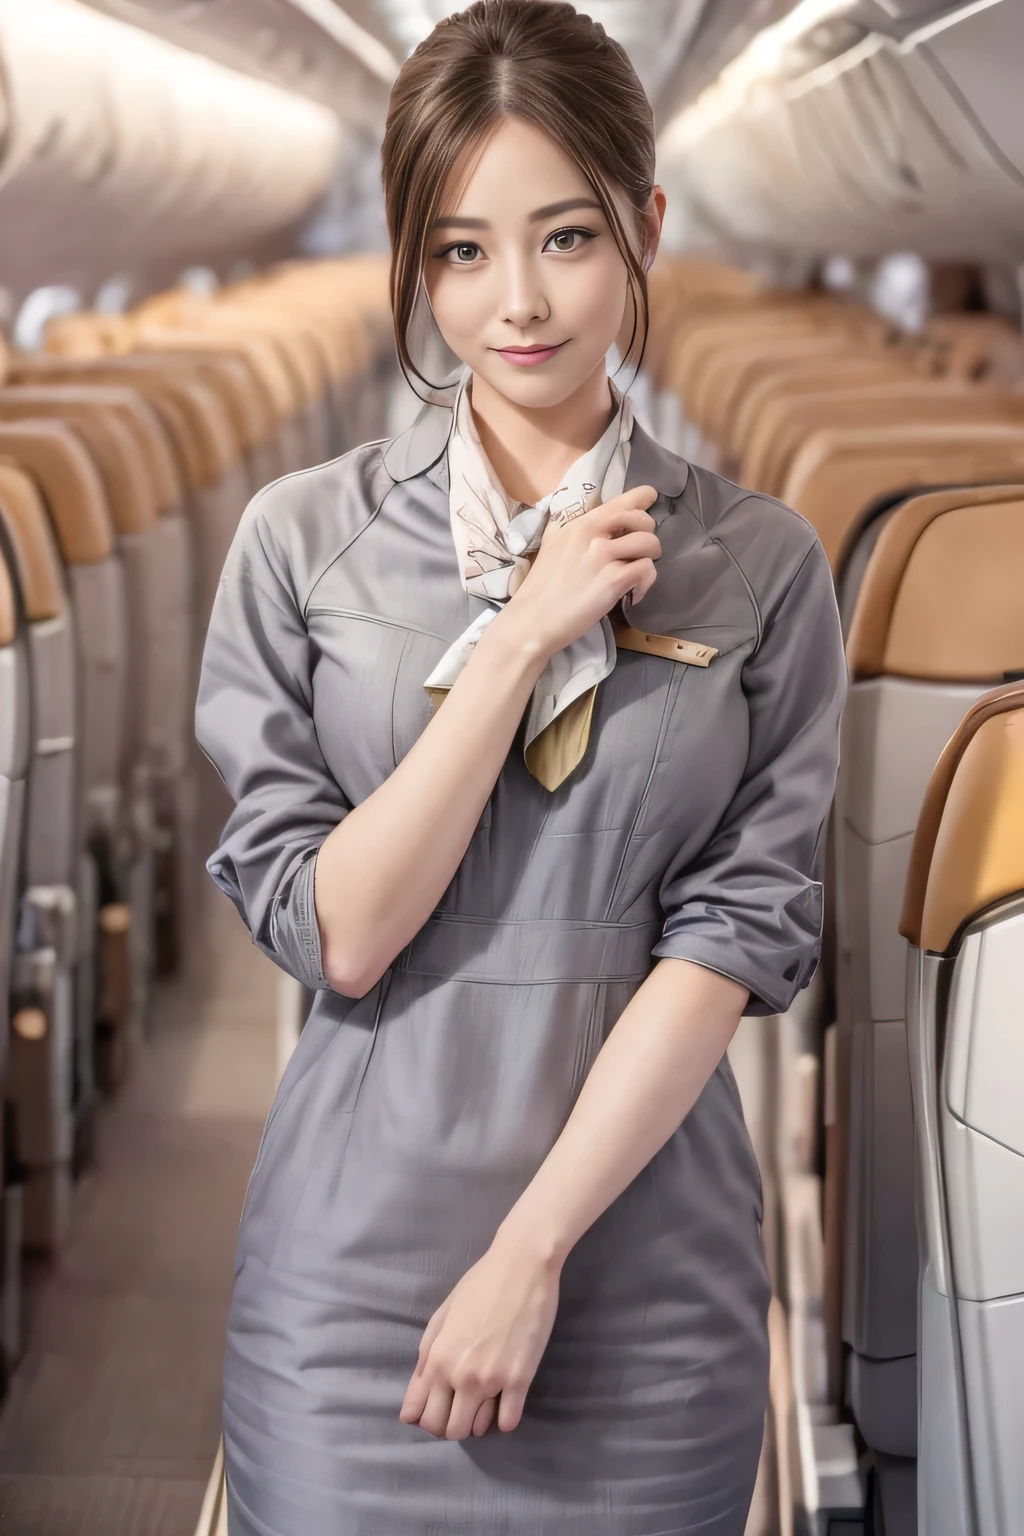 (chef-d&#39;œuvre:1.2、la plus haute qualité:1.2)、32K HDR、haute résolution、(seul、1 fille、silhouette mince)、（Style réaliste avec l&#39;uniforme de Starlux Airlines）、 (À bord d&#39;un avion de ligne, Éclairage professionnel)、Une vraie femme, Beau visage,、（Uniforme argenté de Starlux Airlines:1.4）、（Uniforme argenté de Starlux Airlines with short sleeves）、（foulard sur la poitrine）、Gros seins、（chignon cheveux longs、chignon）、les cheveux brun foncé、Tir lointain、（（Belle main：2.0））、（（Des proportions corporelles harmonieuses：1.5））、（（Membres normaux：2.0））、（（Doigt normal：2.0））、（（Yeux délicats：2.0））、（（Yeux normaux：2.0））)、Belle posture debout